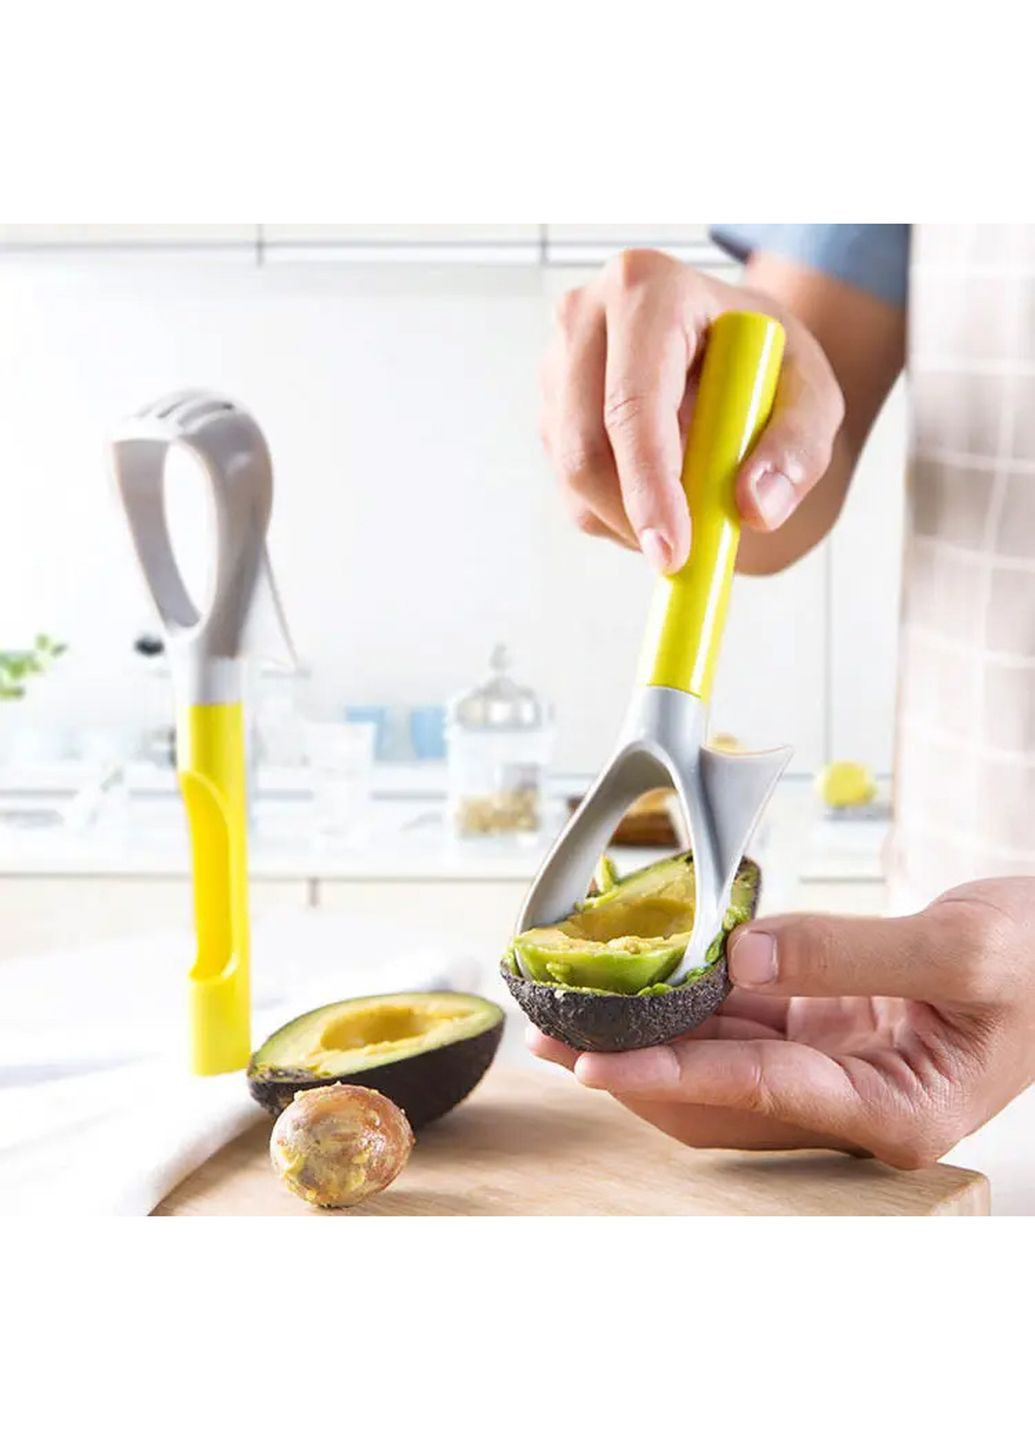 Нож для удаления сердцевины яблока авокадо фруктов пластиковый многофункциональный 5 в 1 Qsheng (260336388)